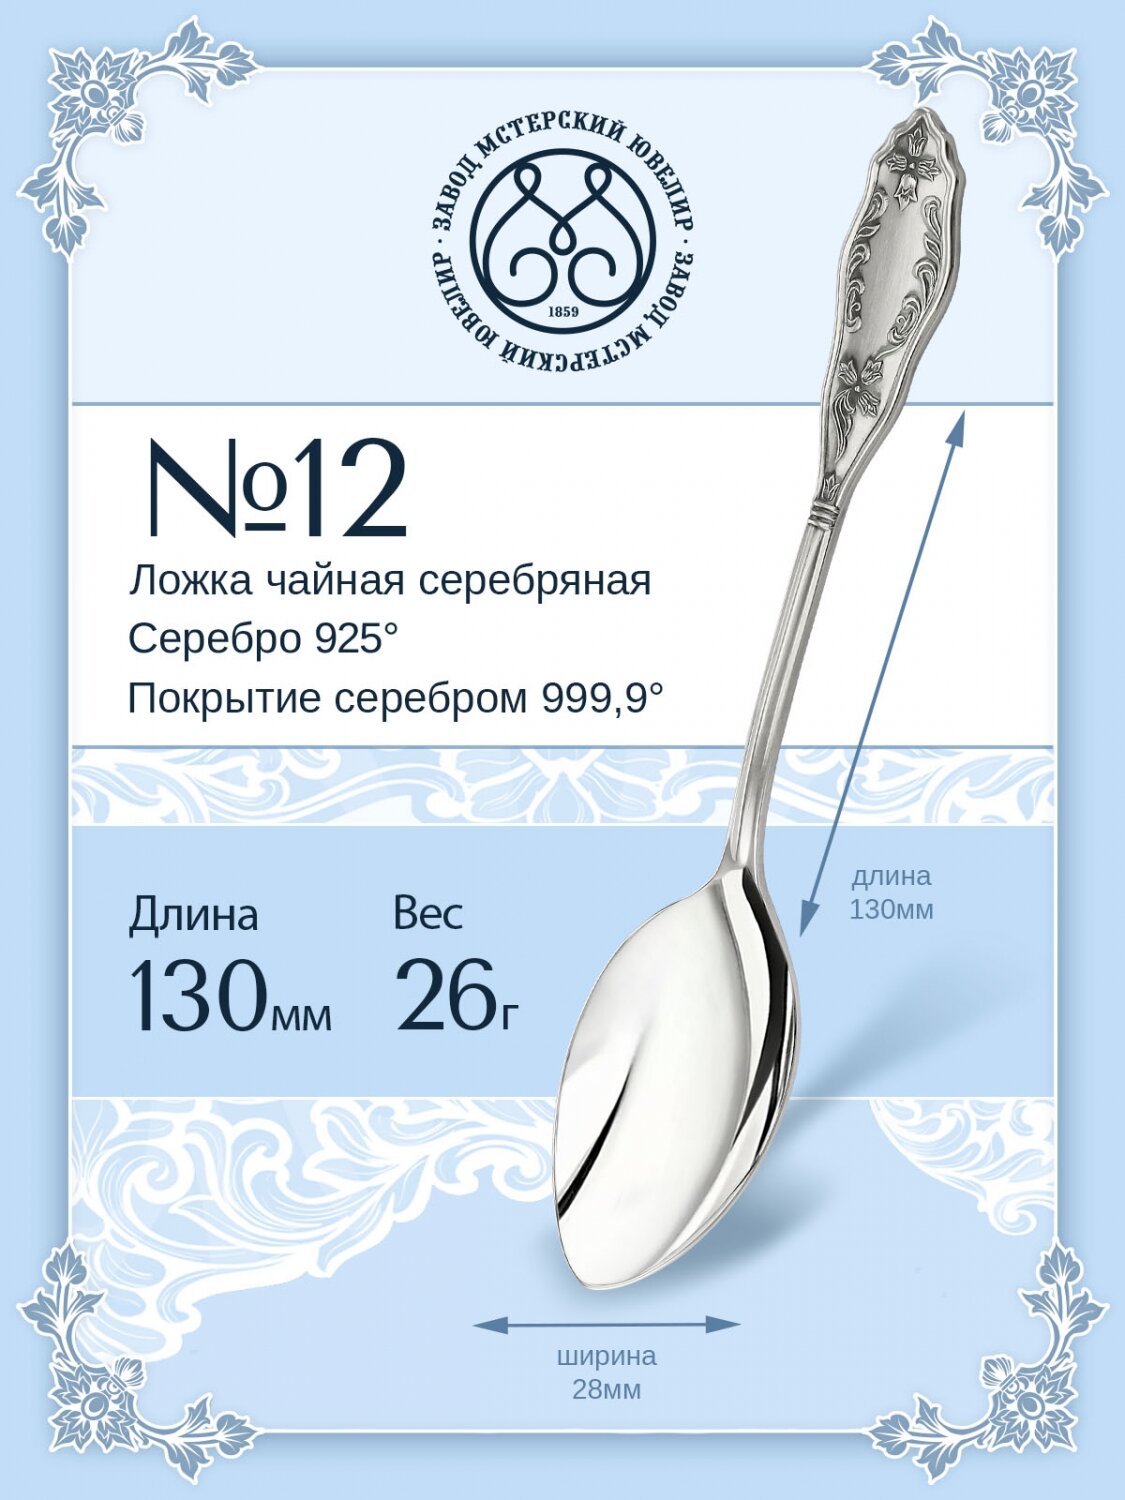 Ложка серебряная Мстерский ювелир чайная №12